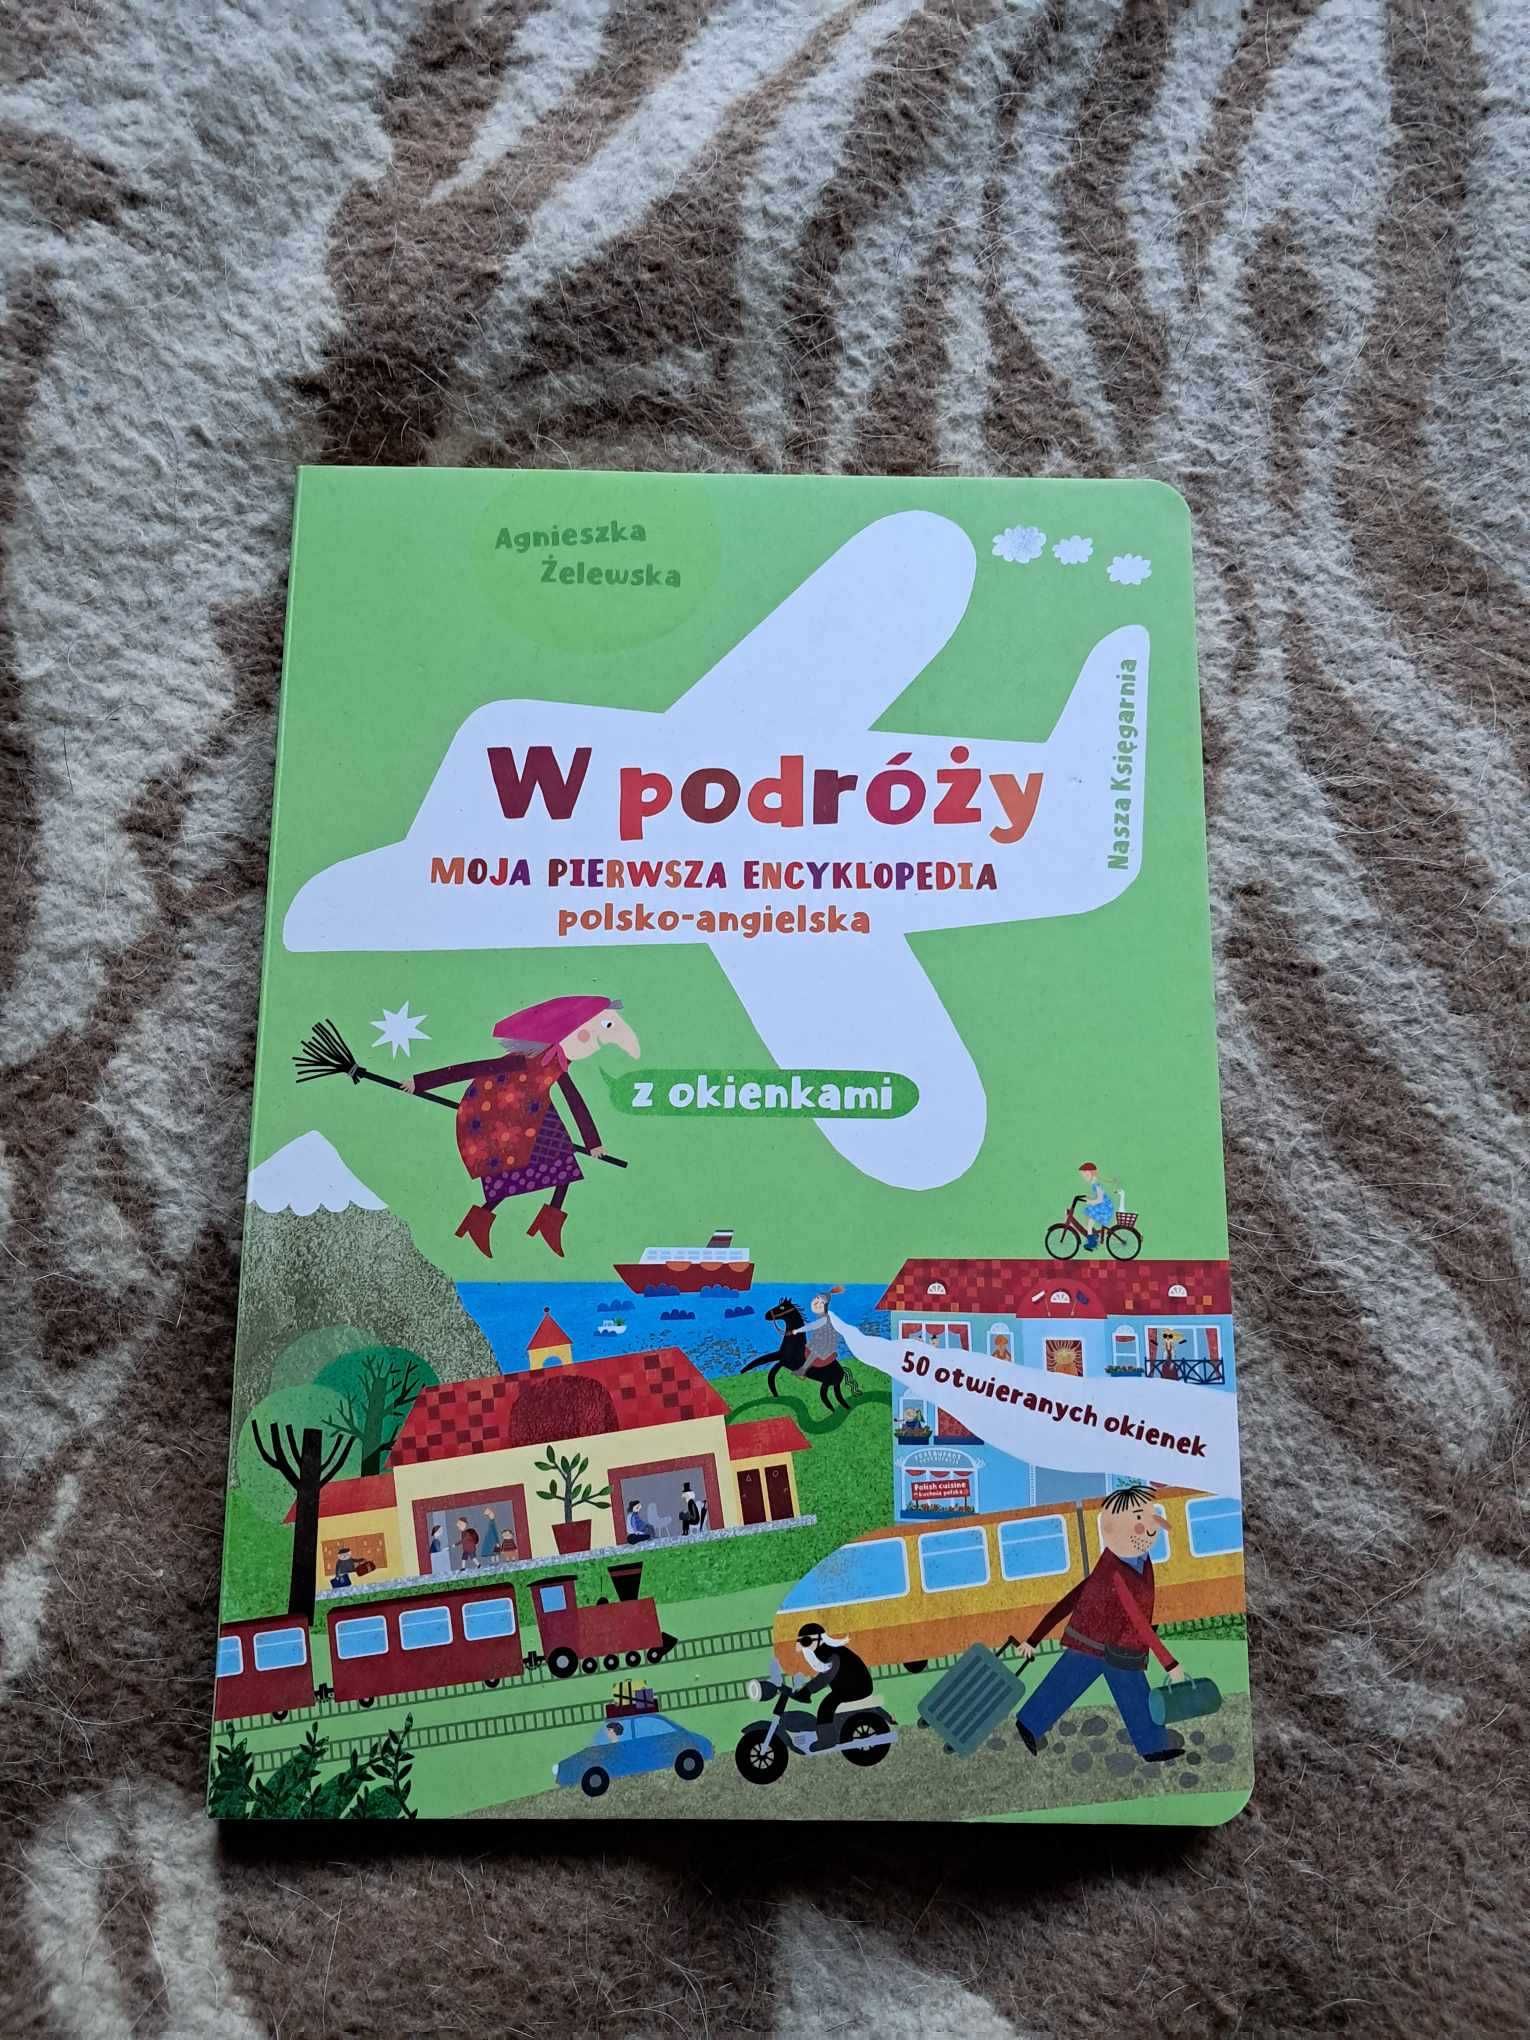 Moja pierwsza encyklopedia polsko-angielska W podróży